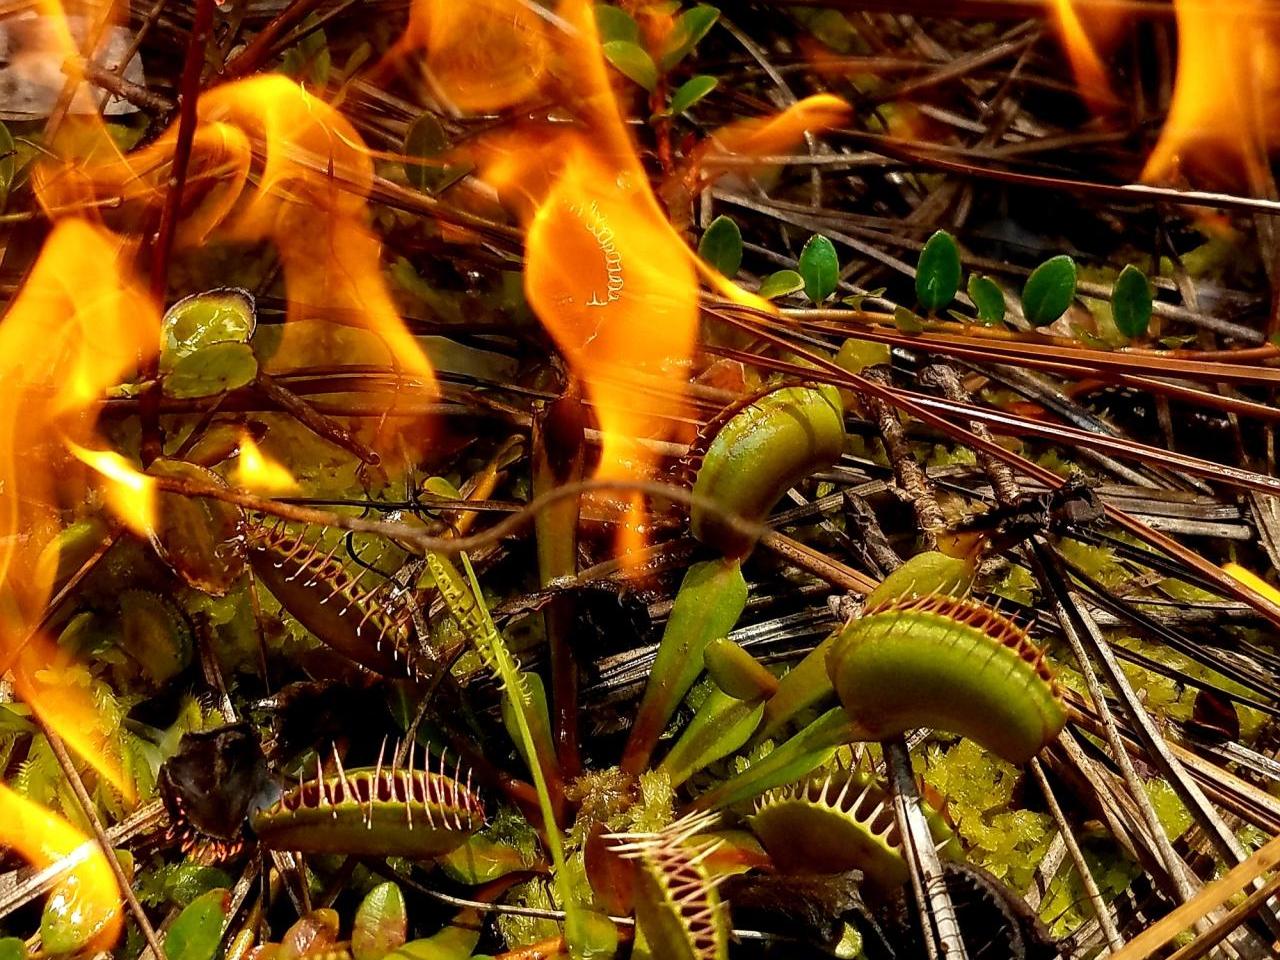 venus flytrap near fire